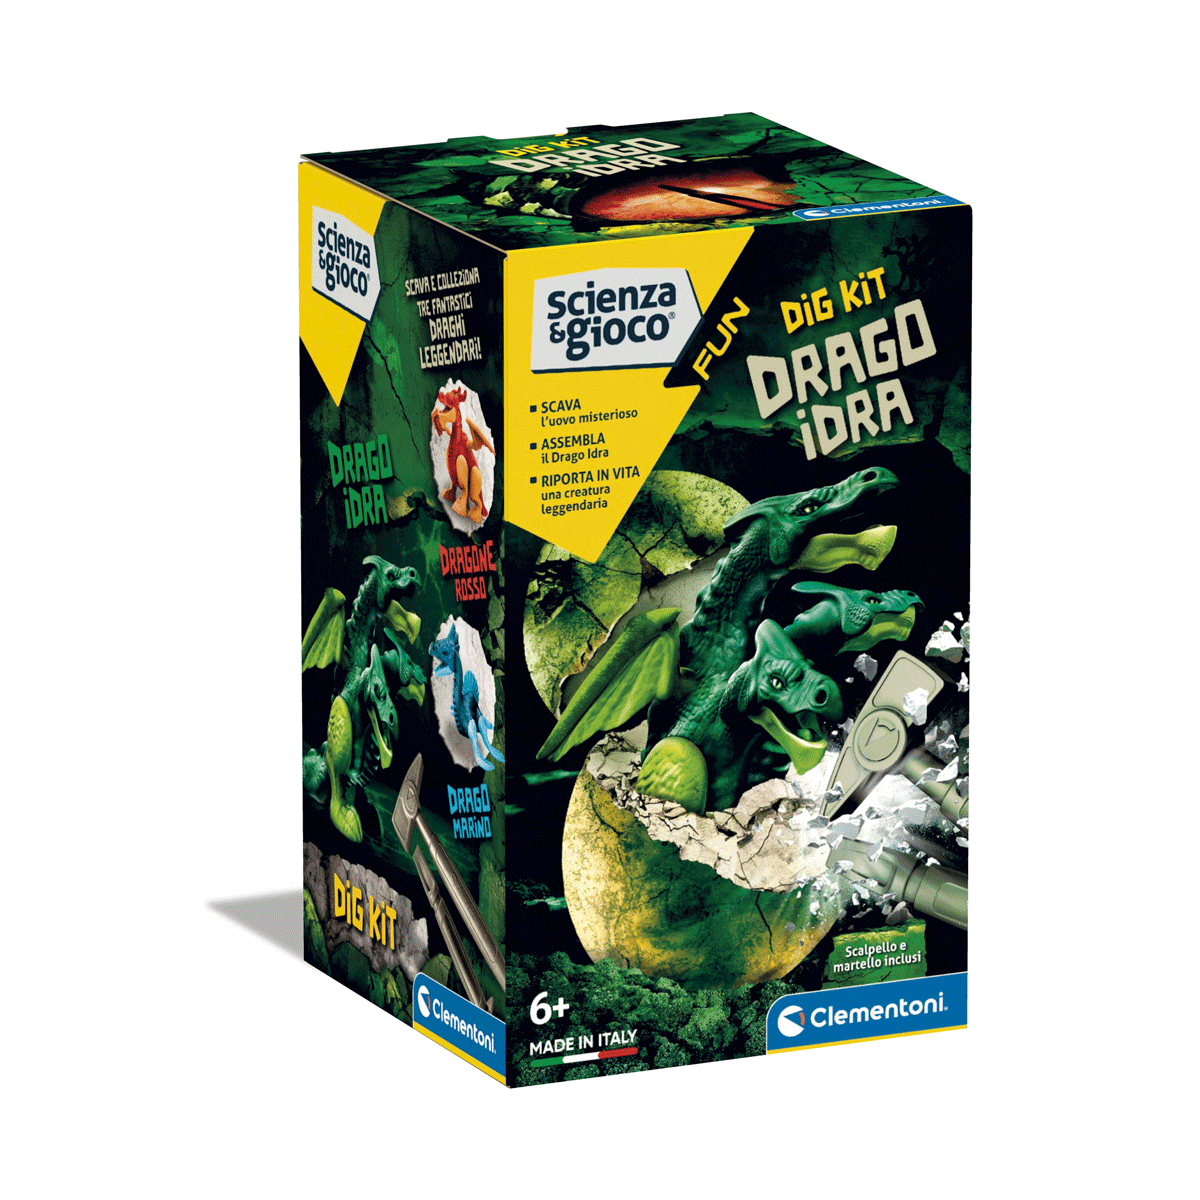 Clementoni - scienza e gioco fun - dig kit drago idra, gioco scientifico - Scienza e Gioco